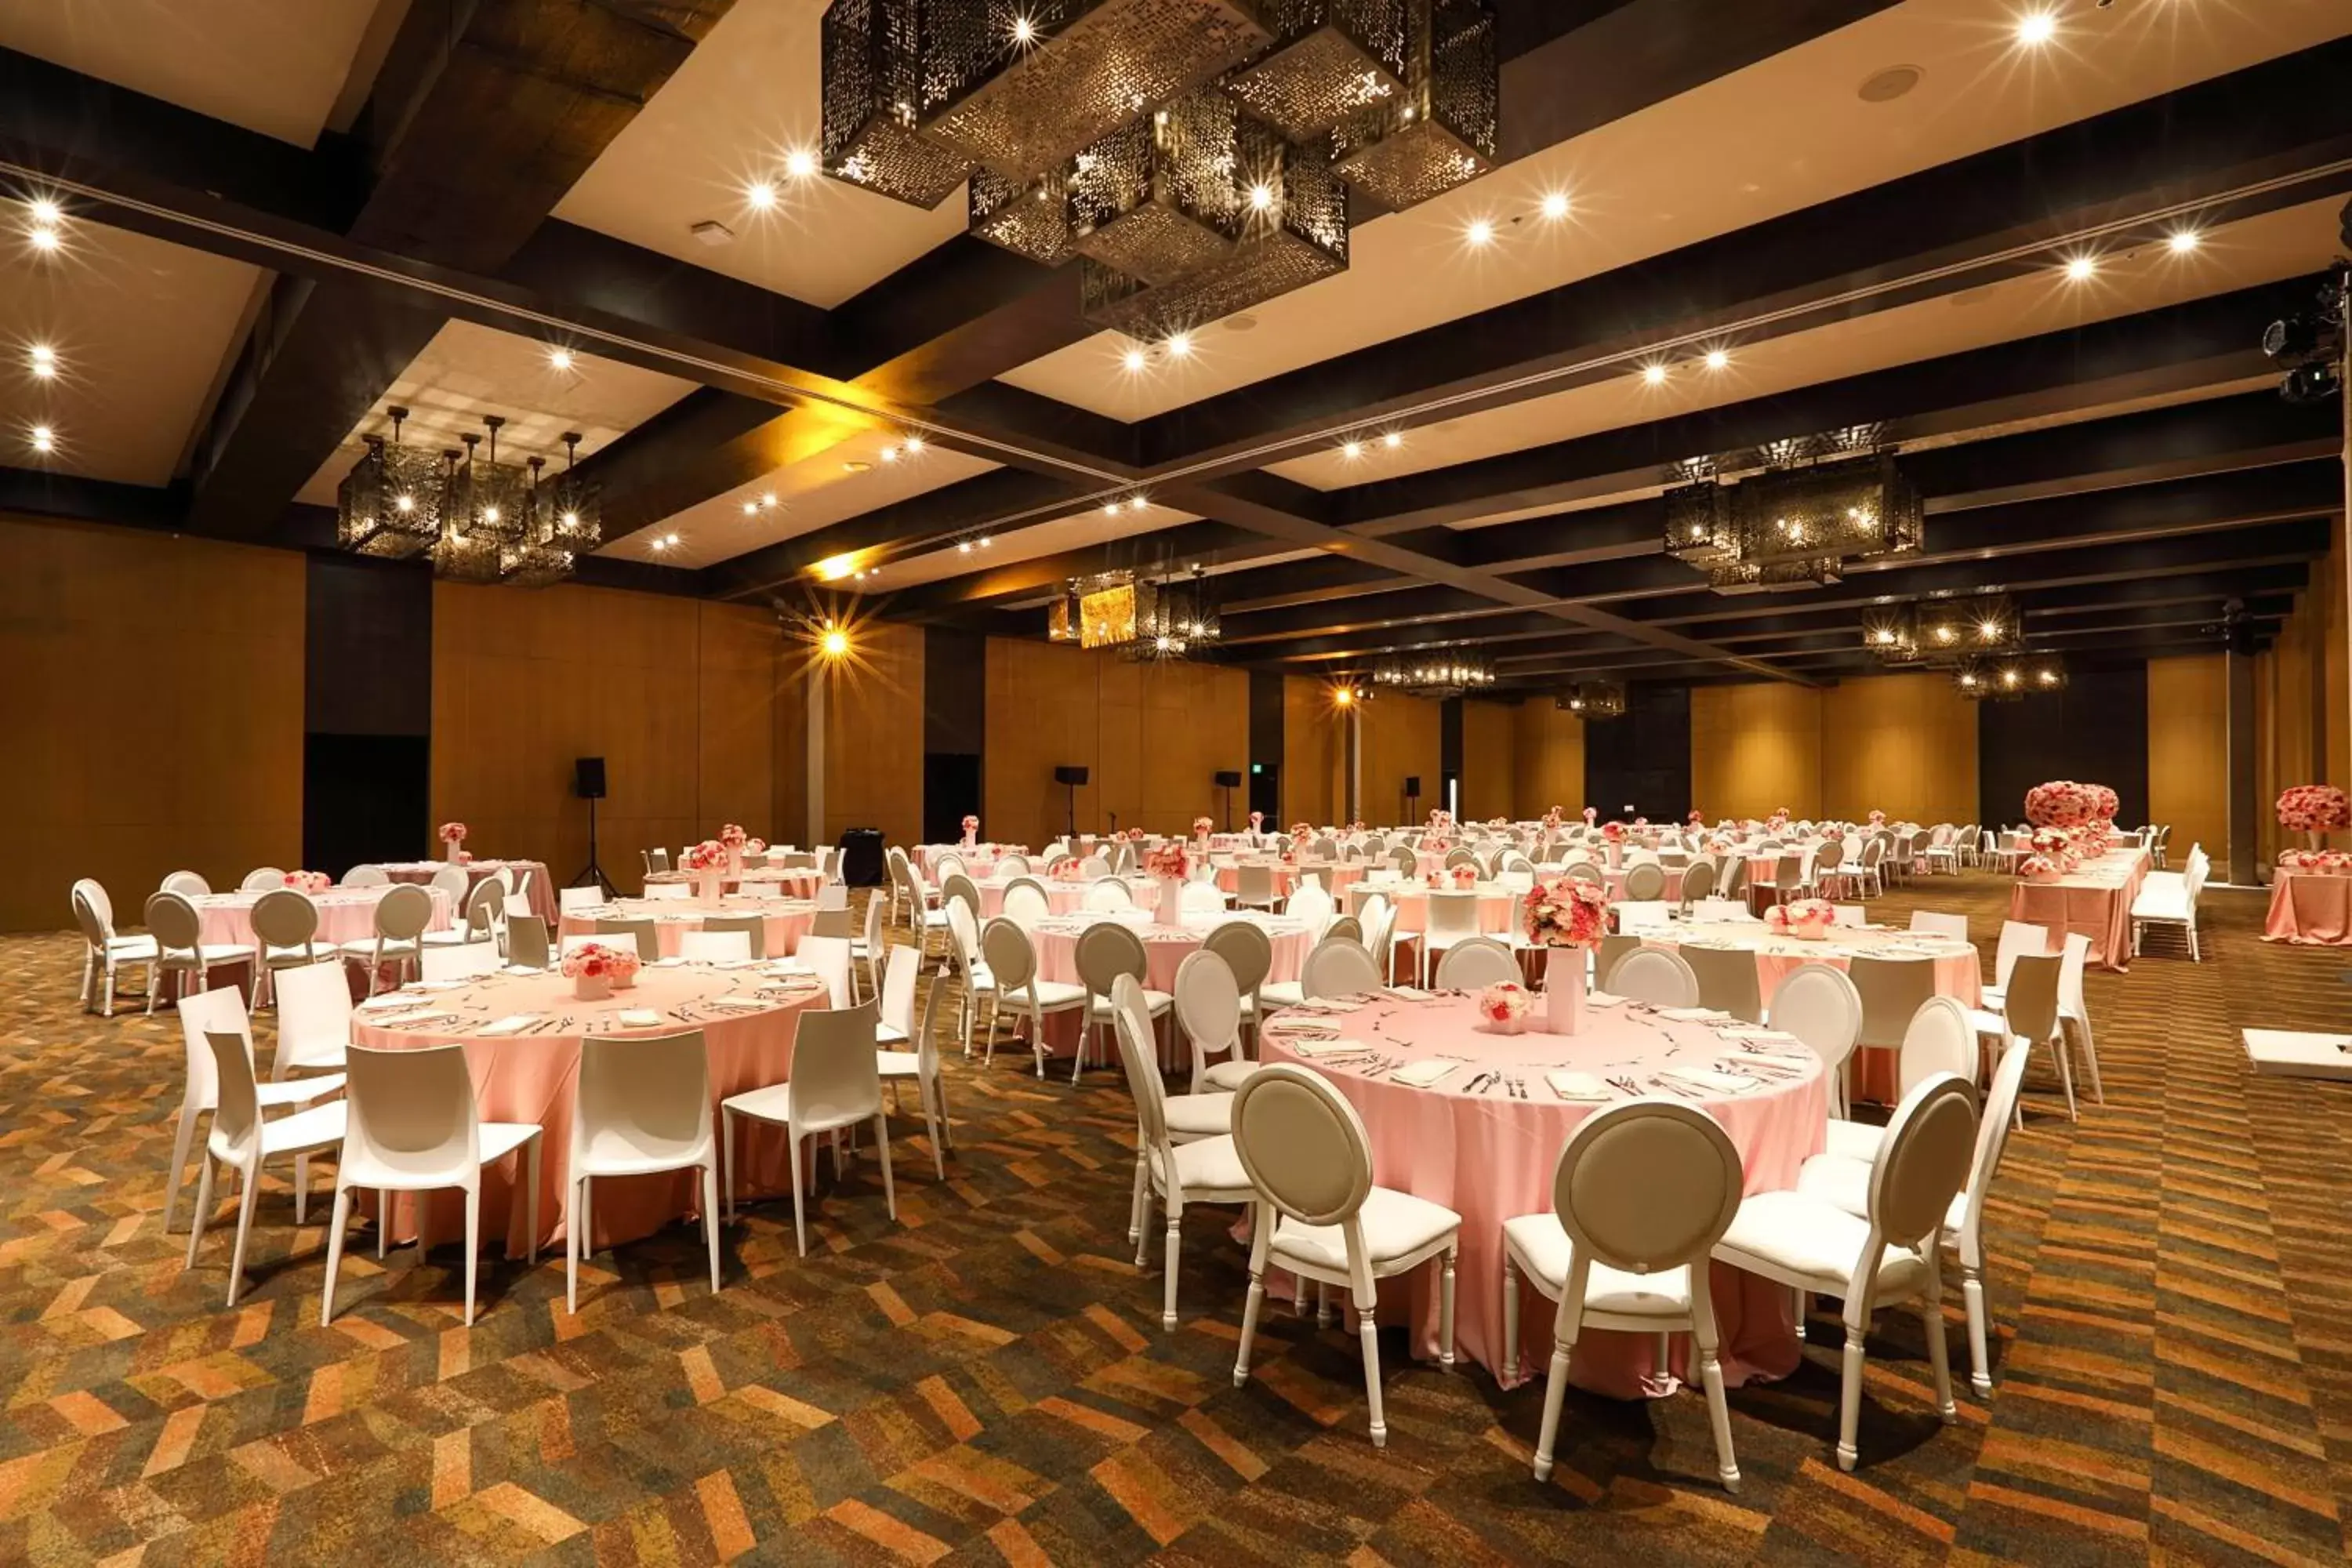 Banquet/Function facilities, Banquet Facilities in JW Marriott Los Cabos Beach Resort & Spa